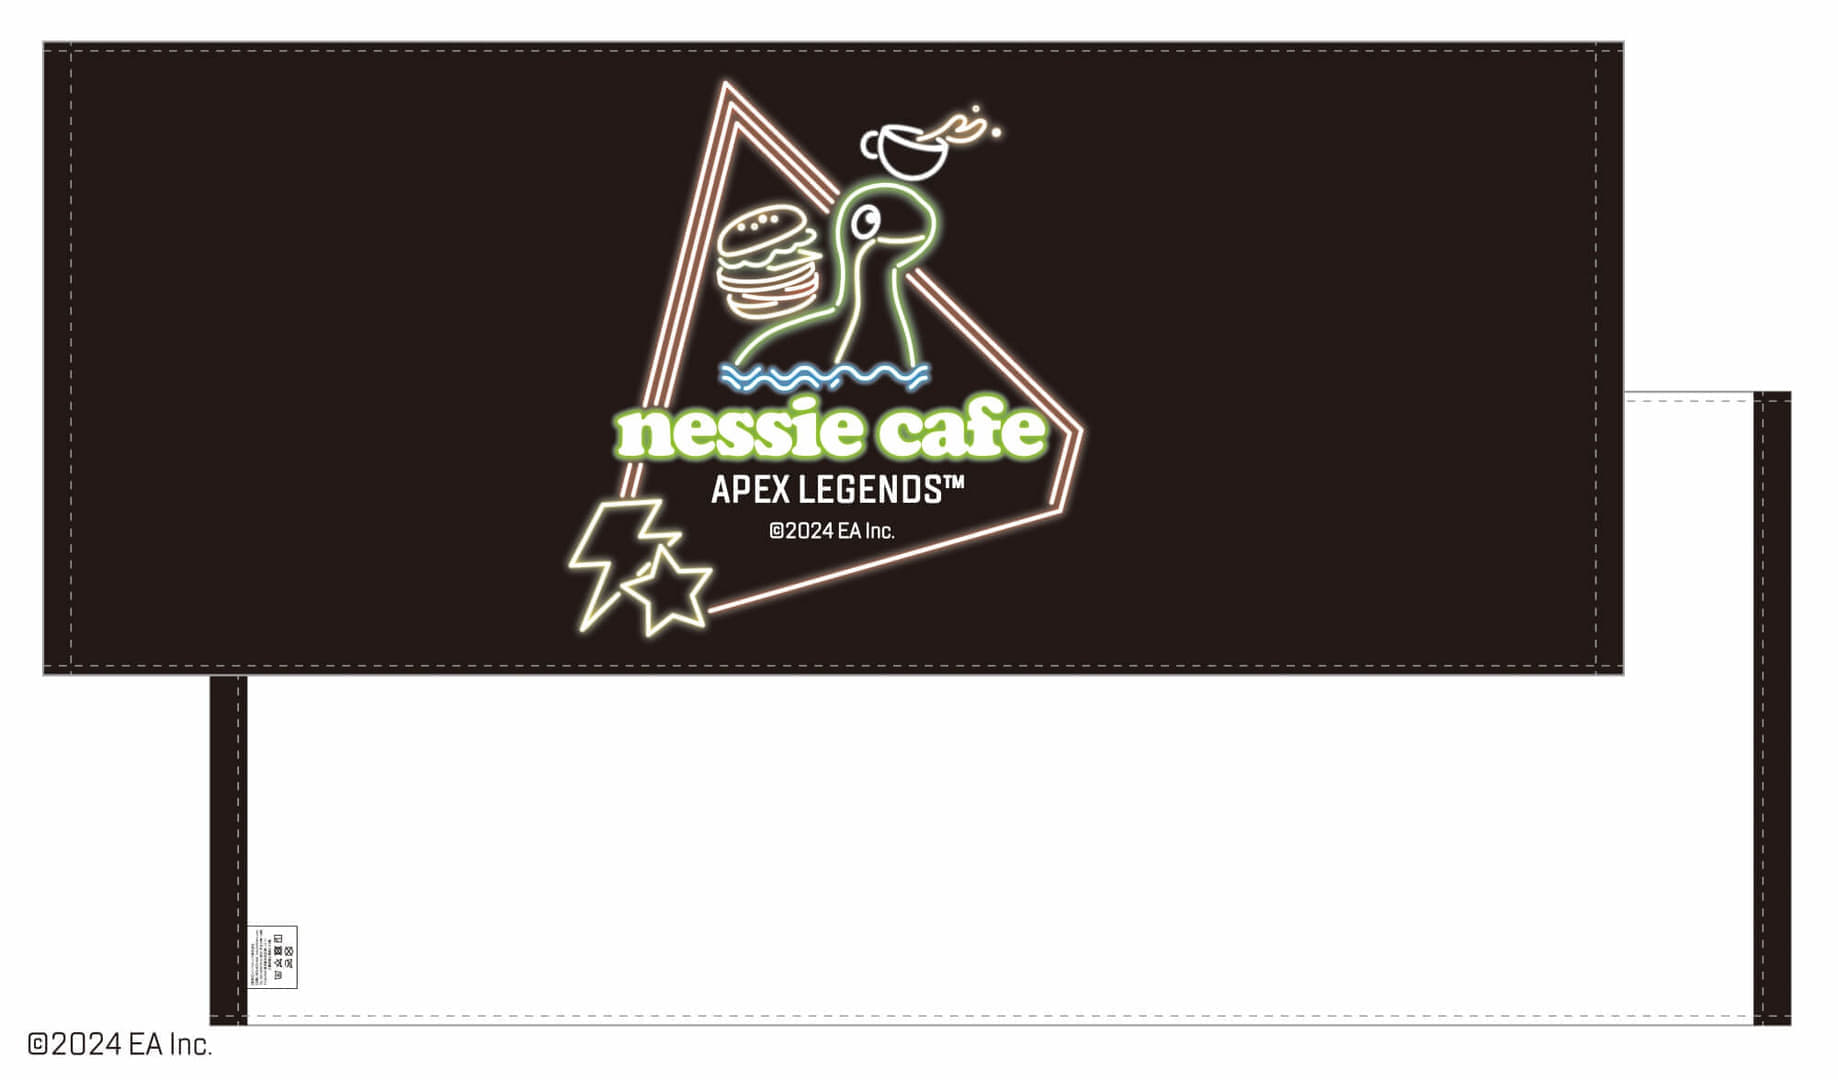 『Apex Legends』コラボの「ネッシーカフェ」が今年も池袋で開催。ネッシーやレジェンドたちをイメージしたメニューが登場_002